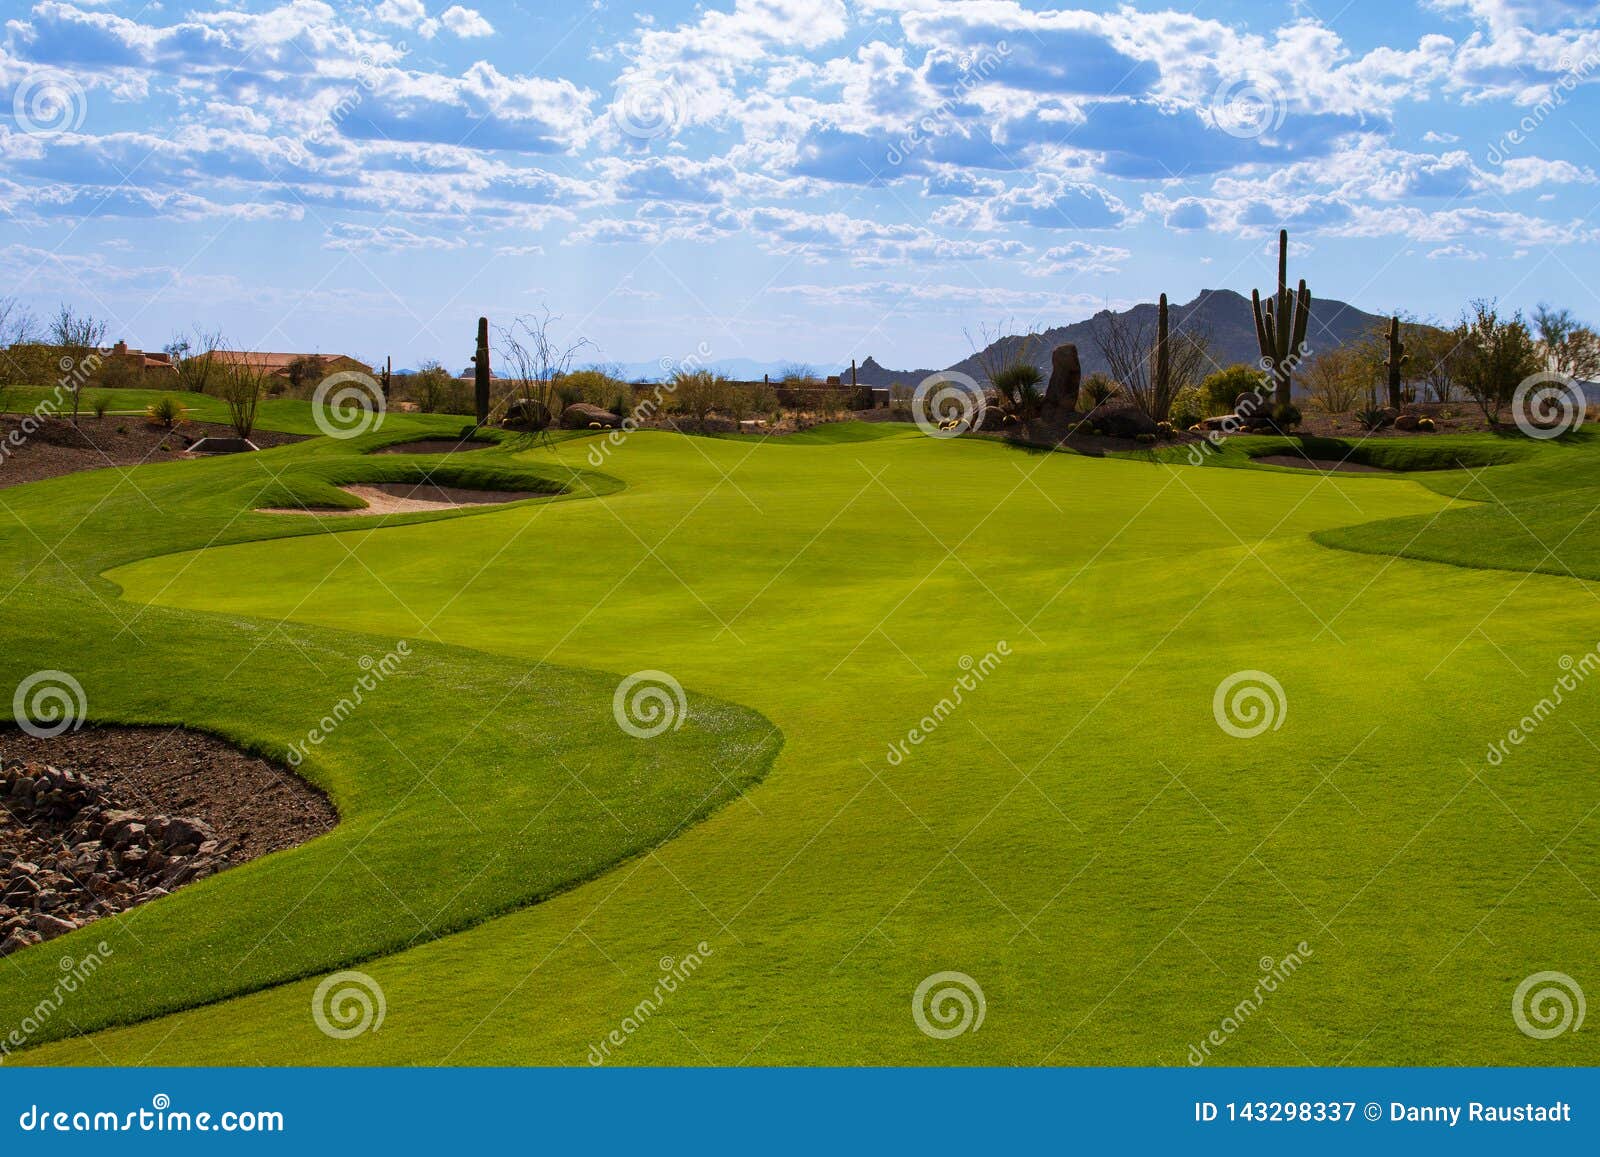 arizona desert golf course fairway